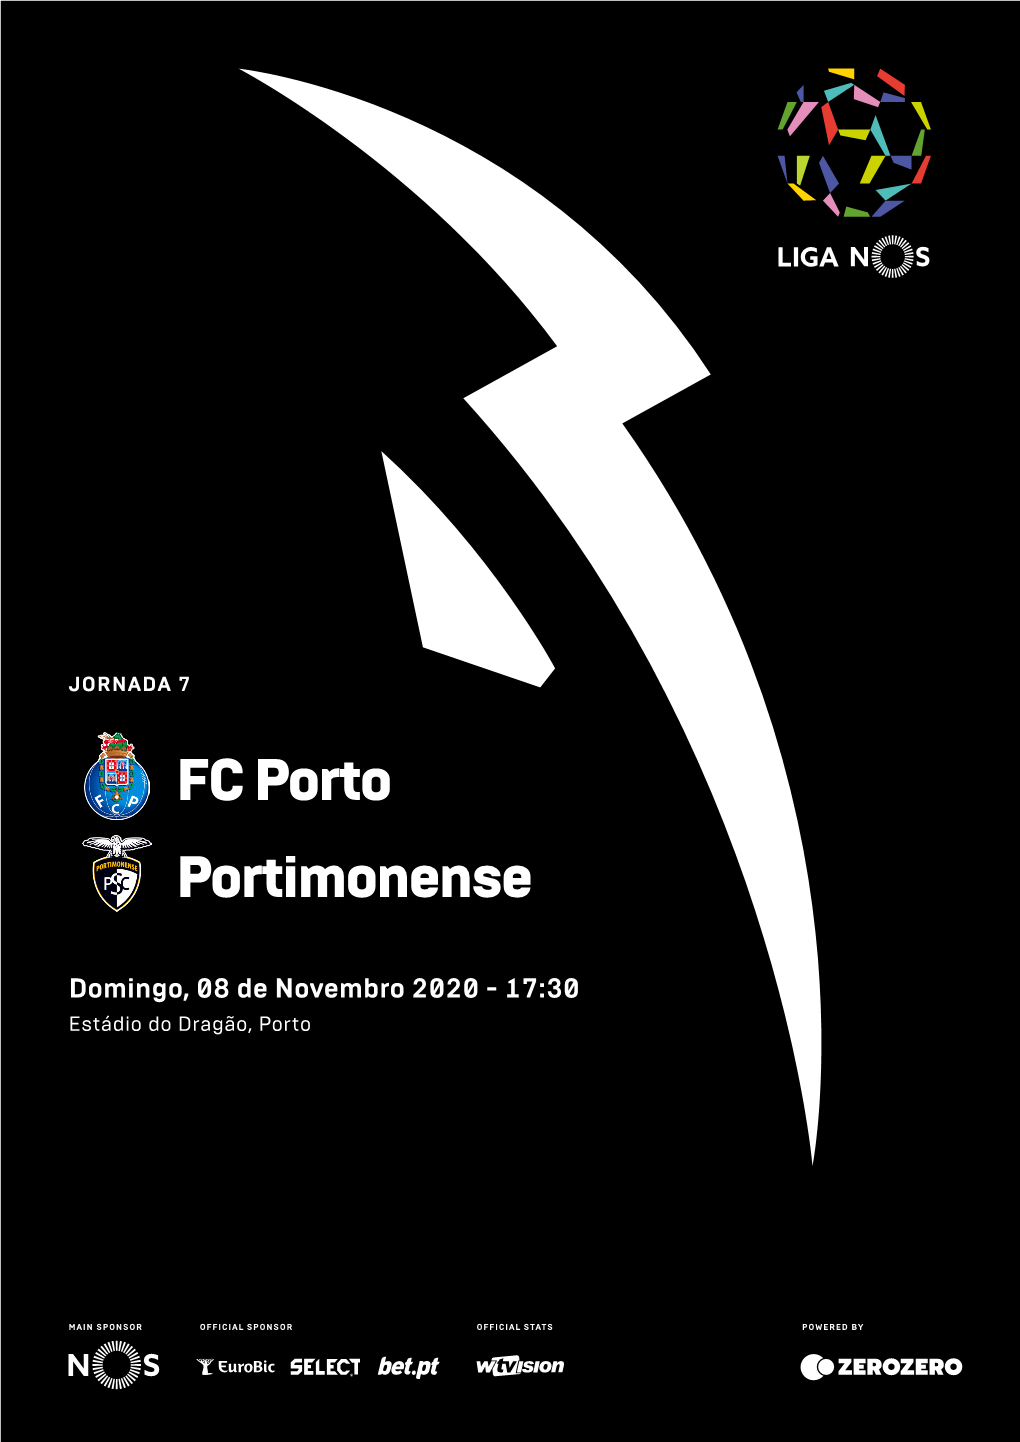 FC Porto Portimonense